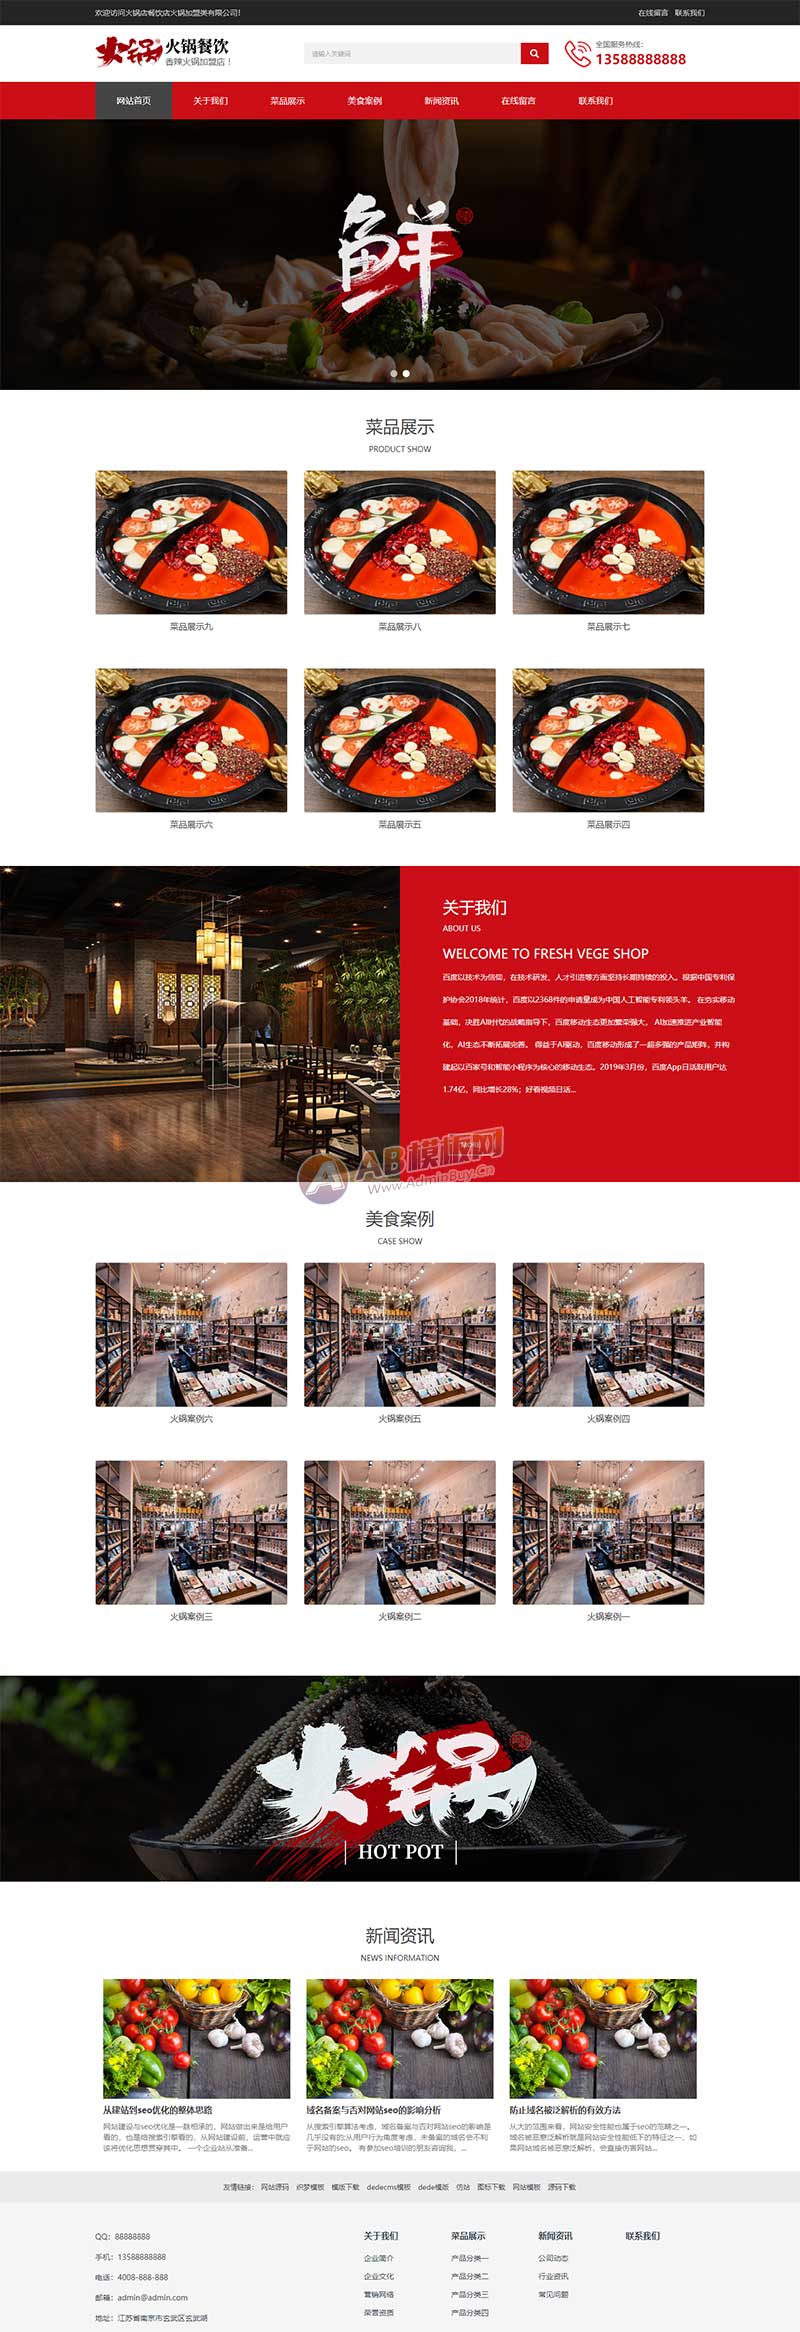 响应式火锅餐饮加盟店类网站织梦模板 HTML5餐饮美食网站源码